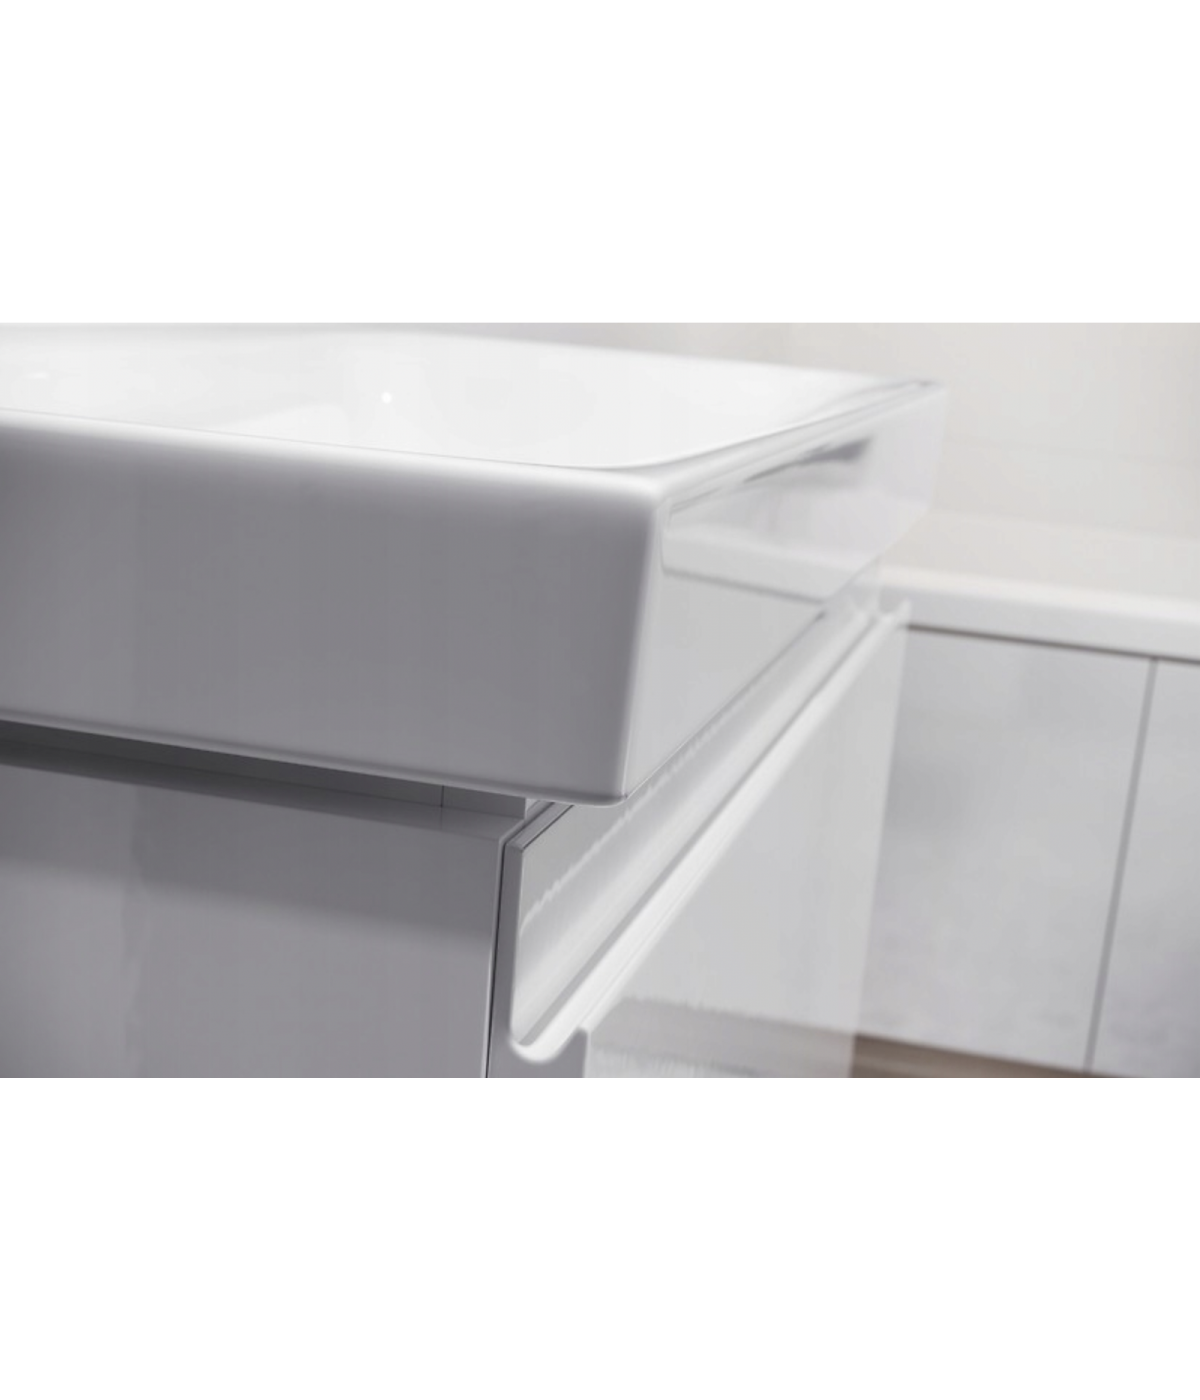 Badmöbel Set MODUO SLIM 50 Waschbecken-Unterschrank, Hochschrank 160 mit Spiegel Weiß